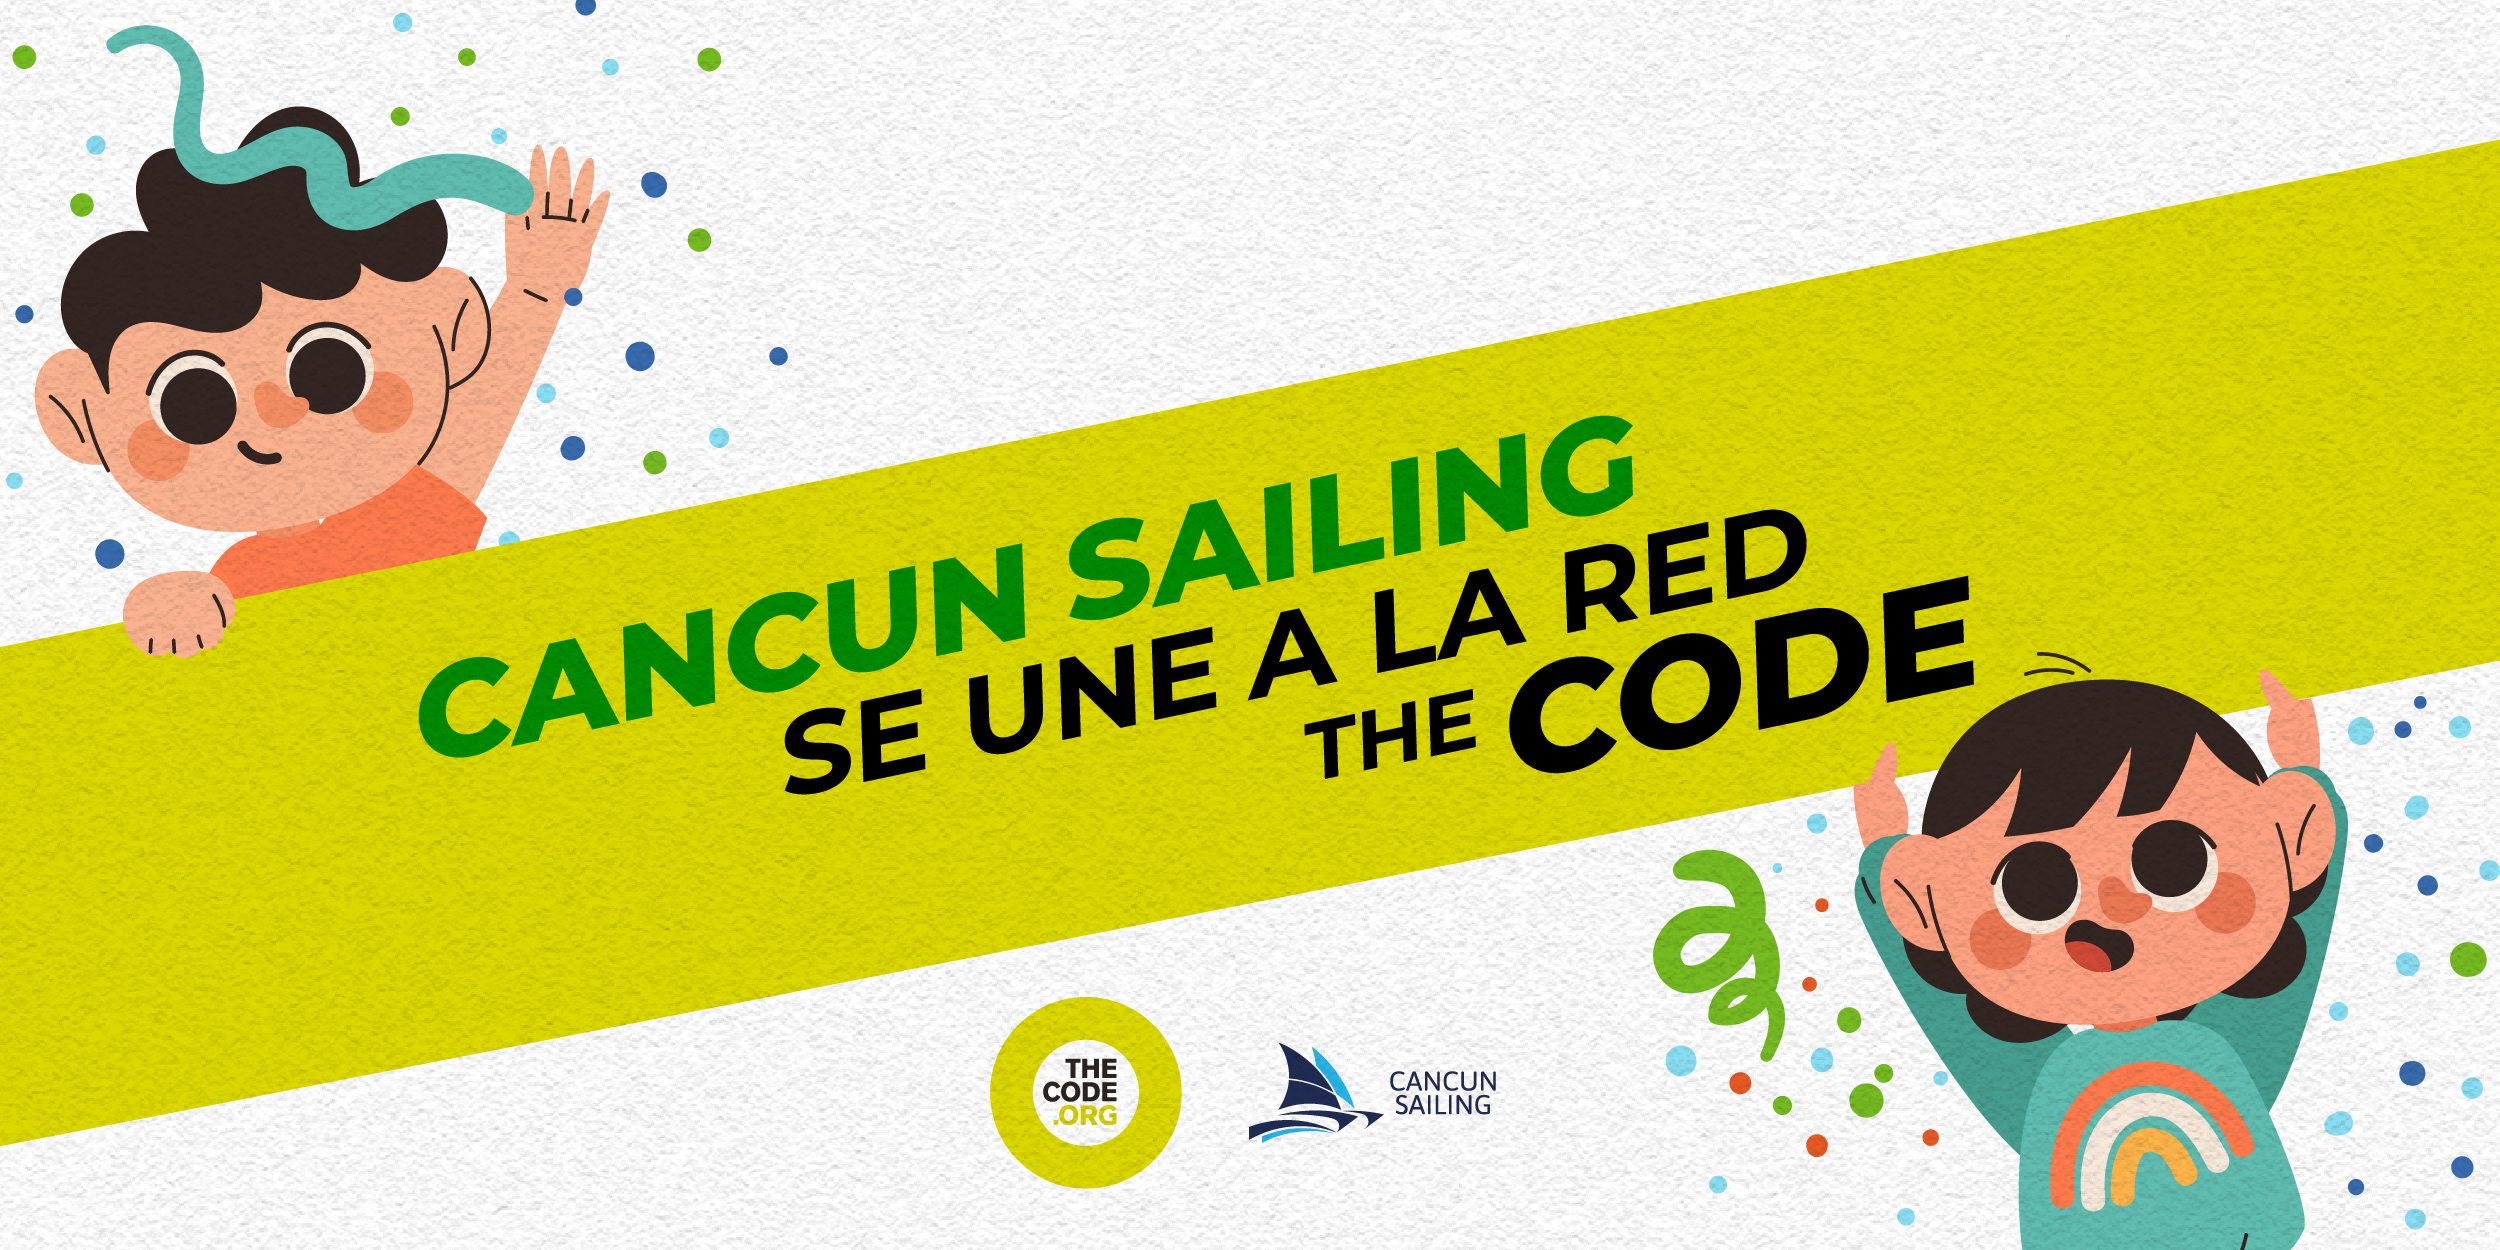 Cancun Sailing se una a la red The Code